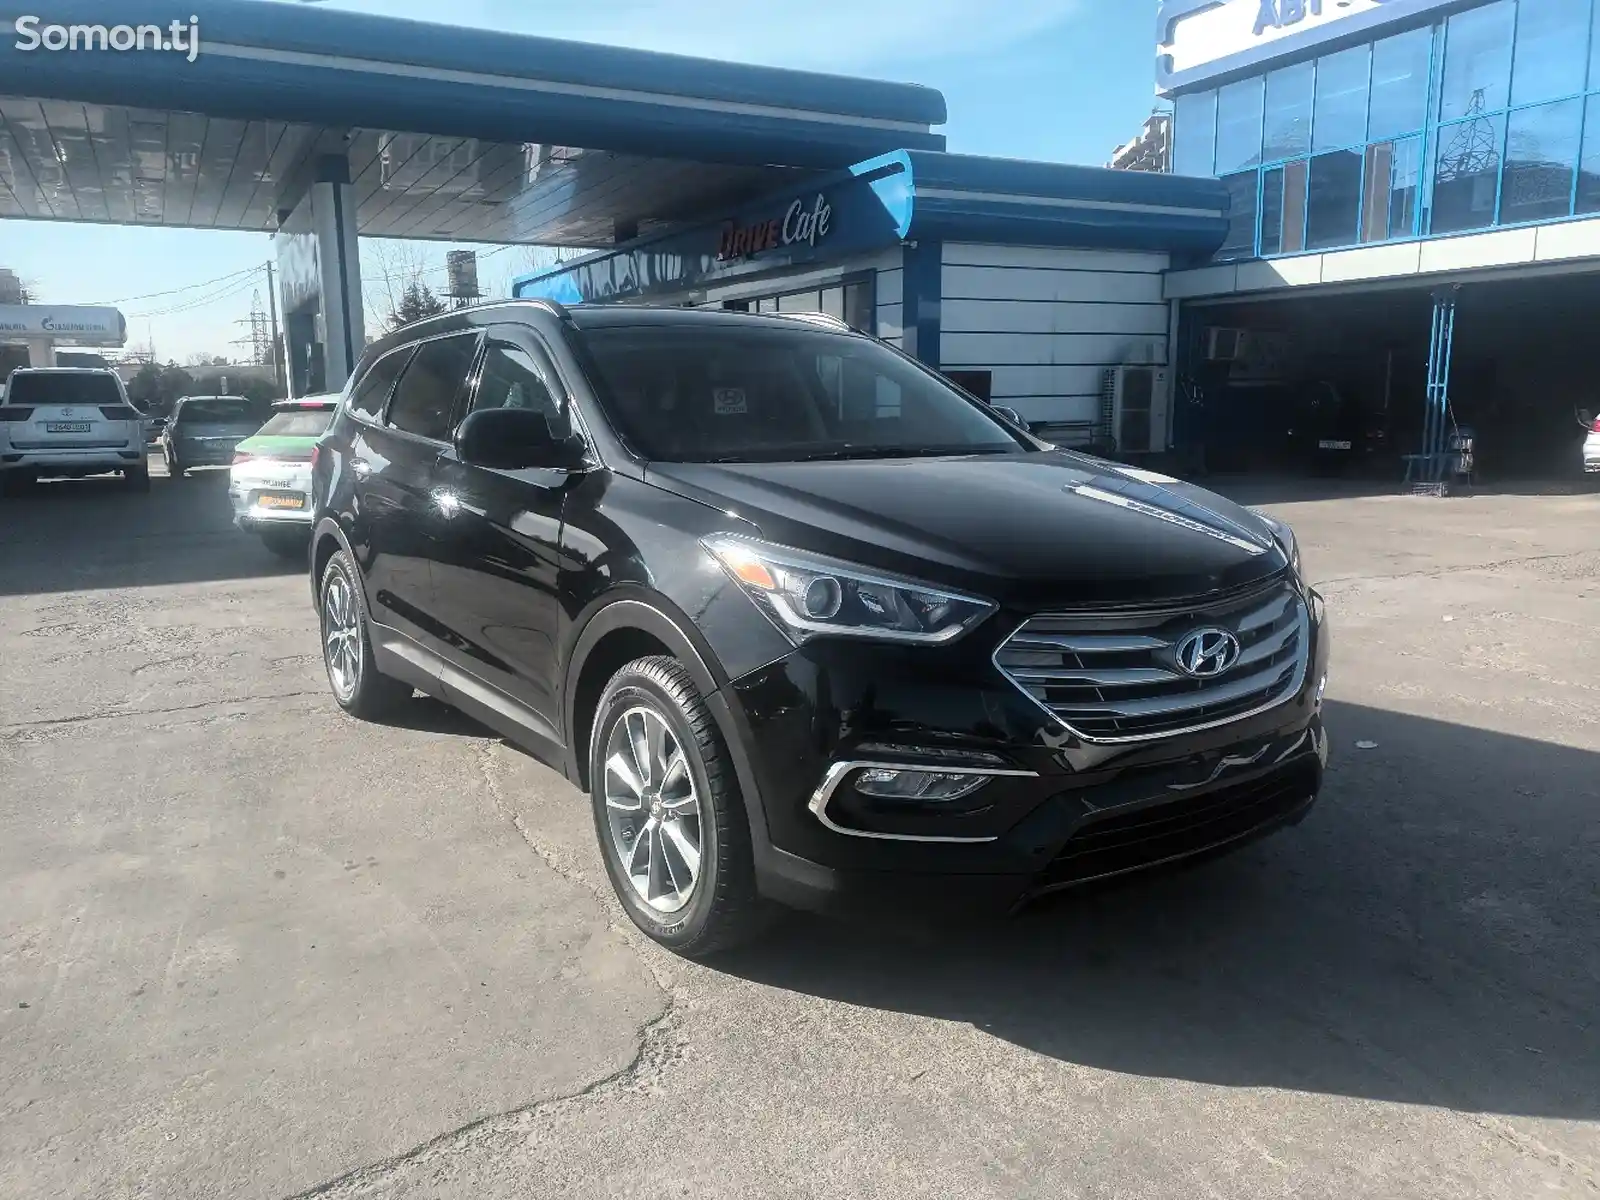 Hyundai Santa Fe, 2017-11